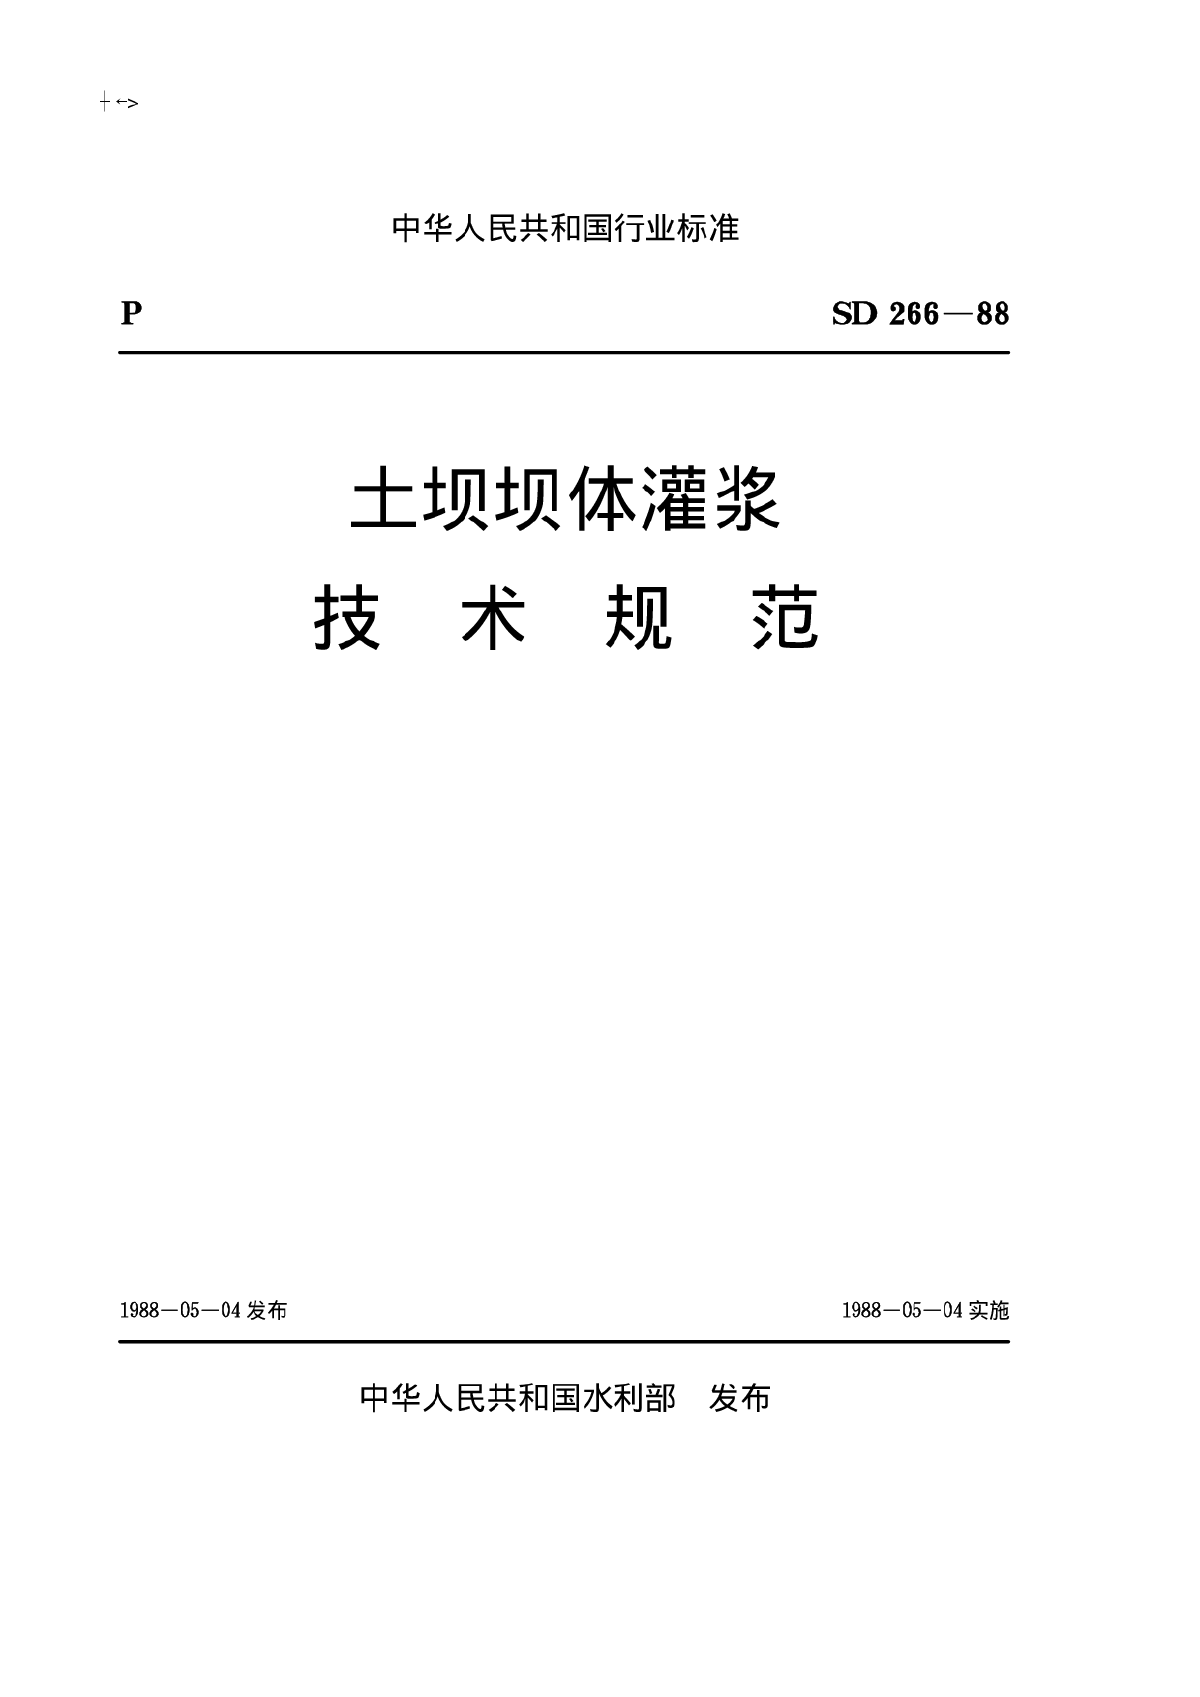 土坝坝体灌浆技术规范(SD266-88)